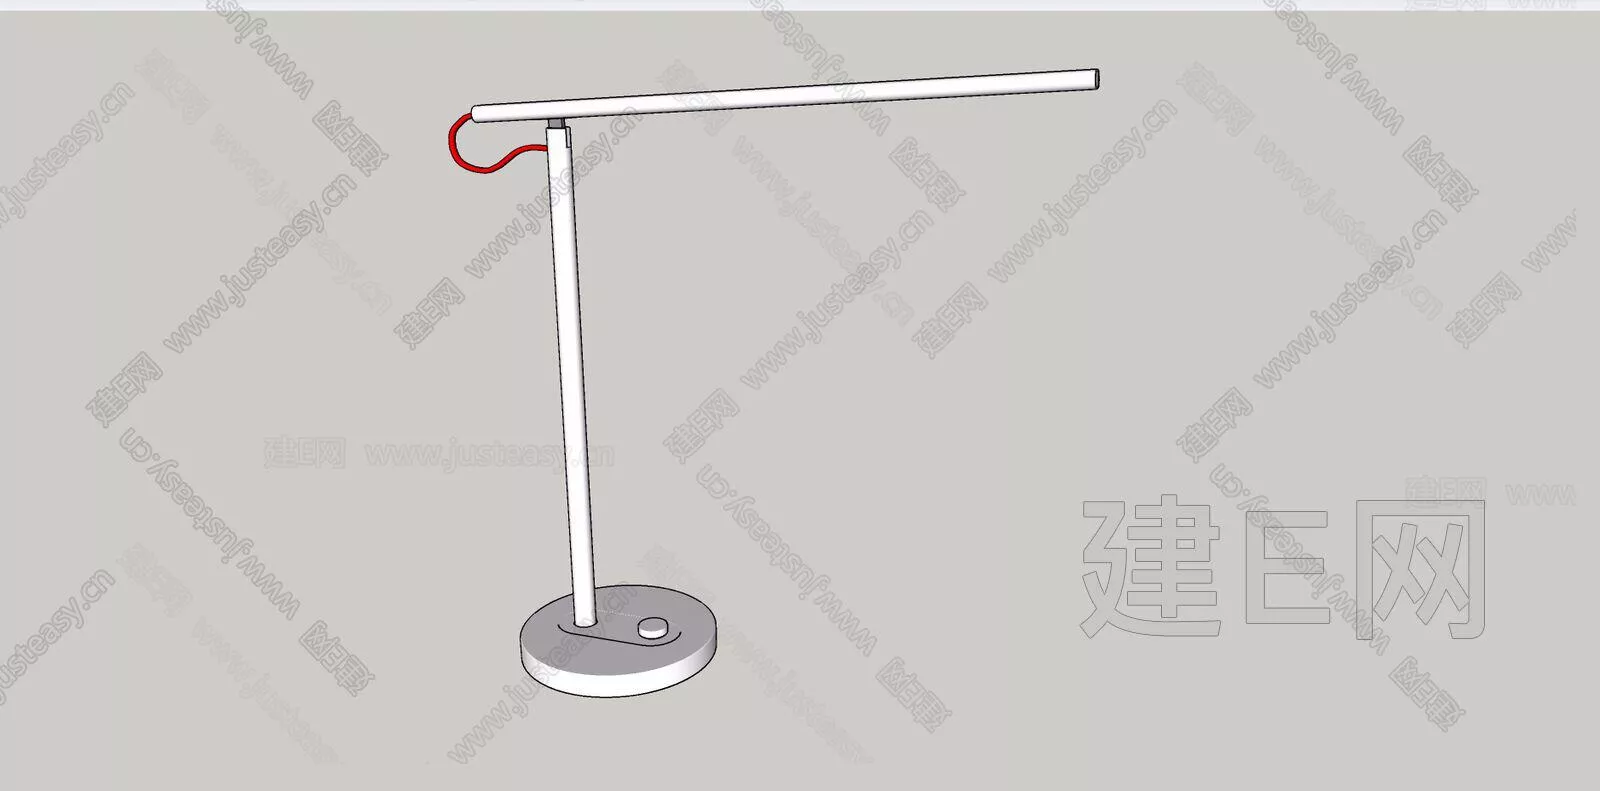 MODERN TABLE LAMP - SKETCHUP 3D MODEL - ENSCAPE - 111952360